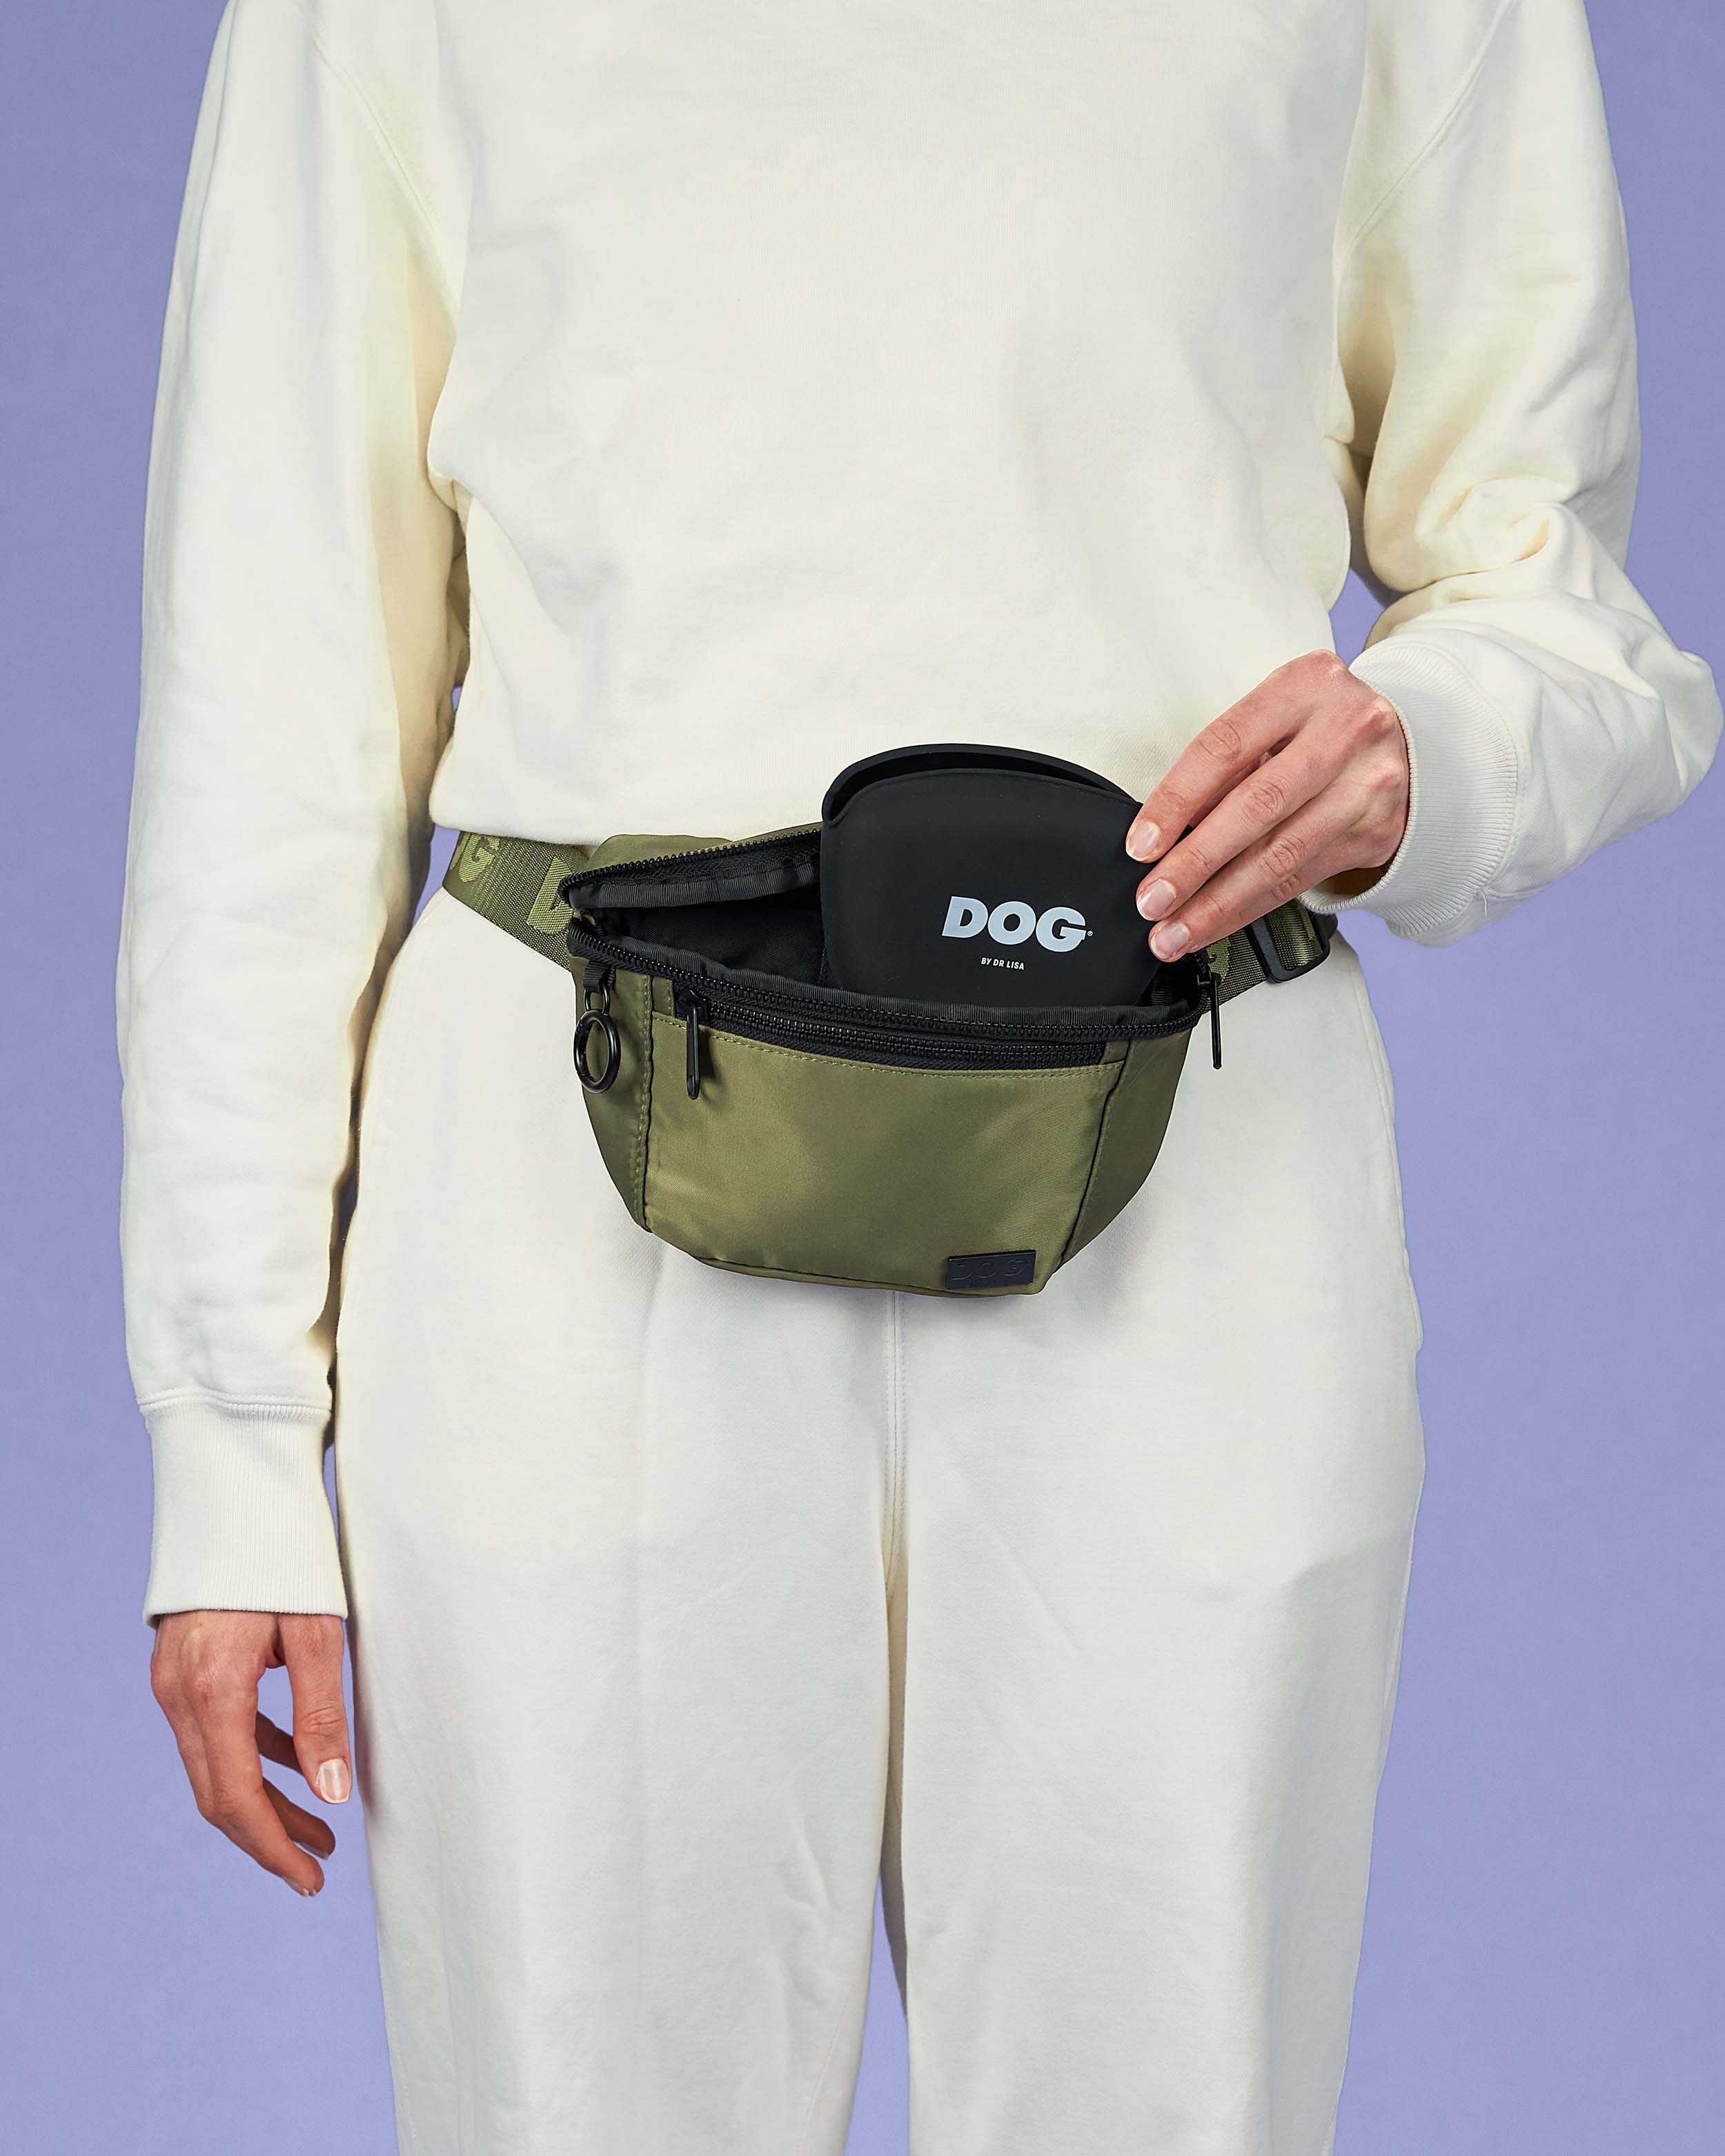 Extender for Pocket Belt  Hip bag, Pocket belt, Walking bag